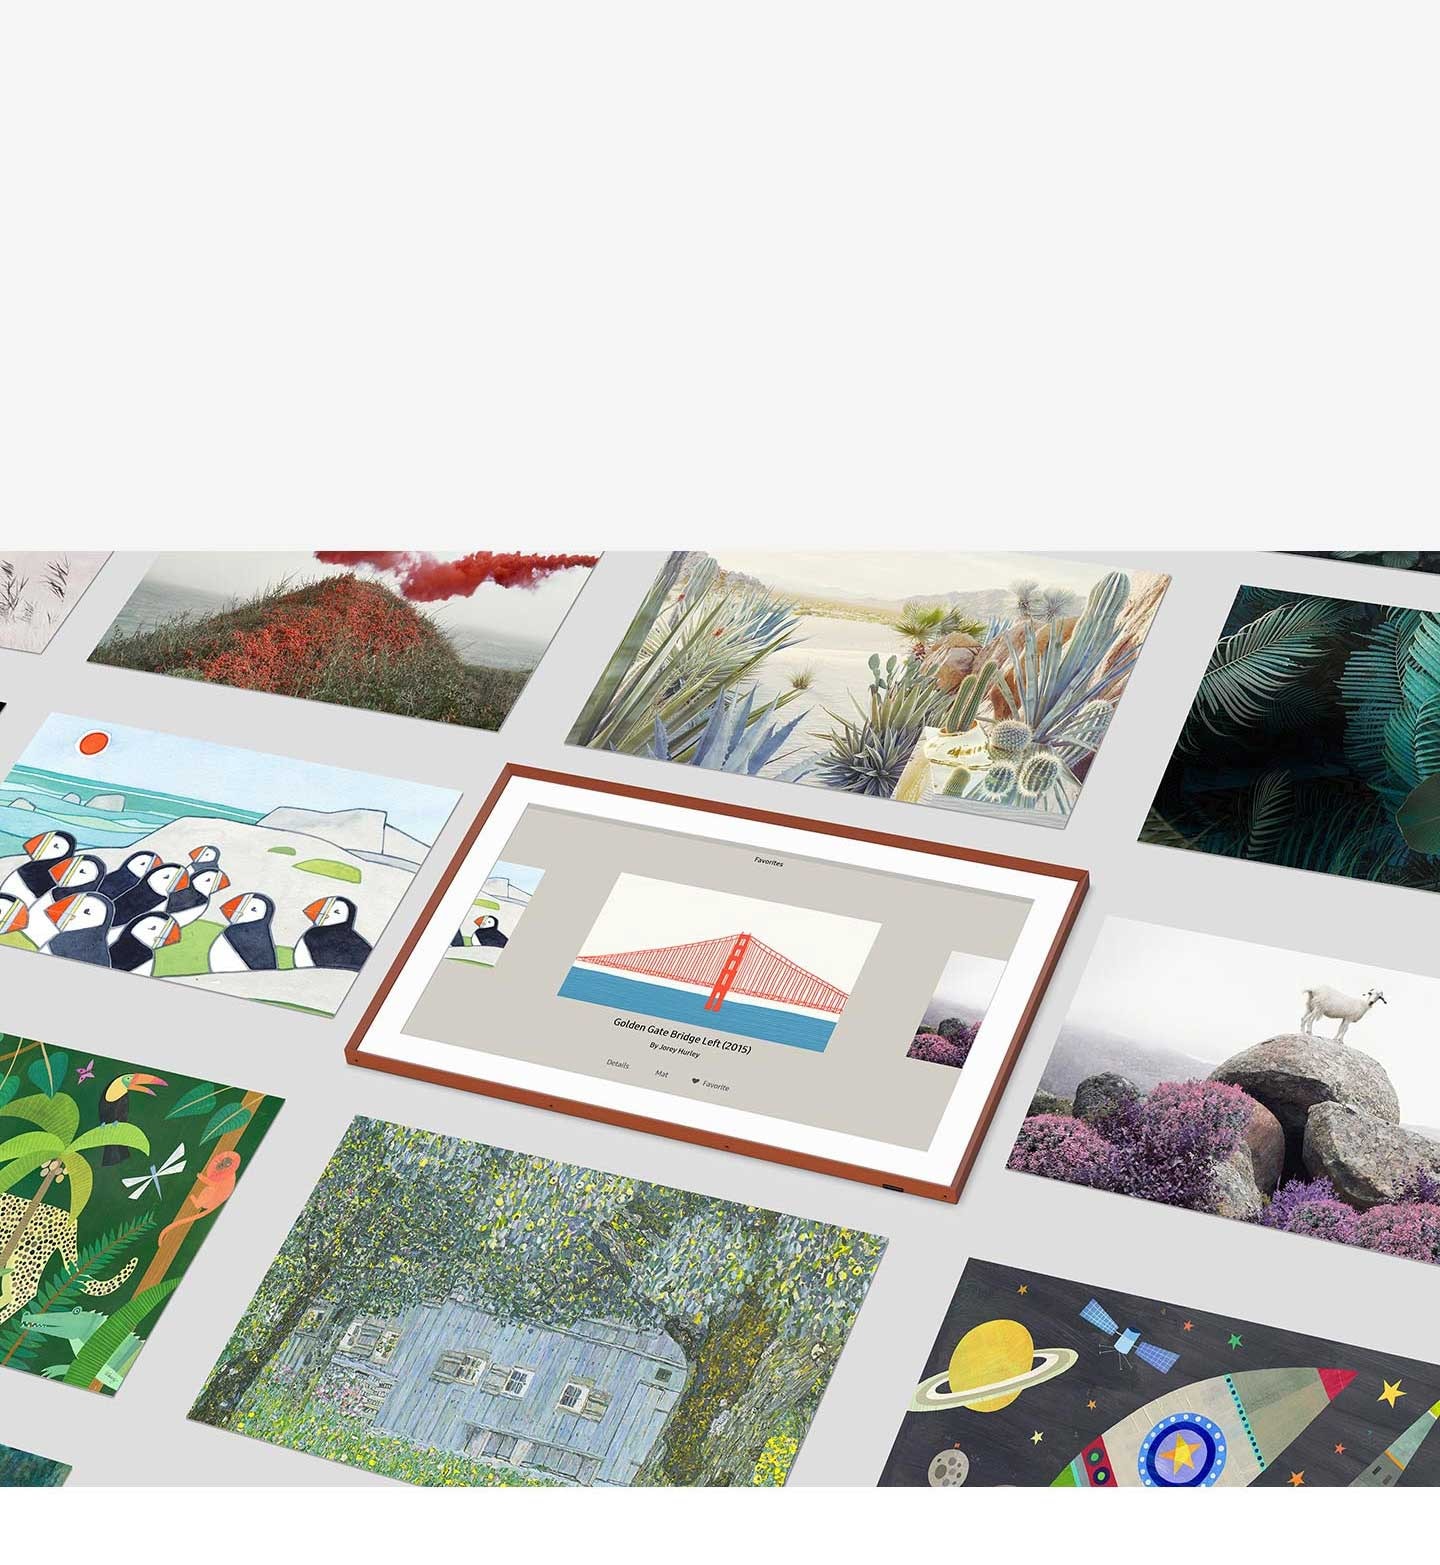 Hình ảnh giao diện người dùng Art Mode cho thấy cây cầu và hình ảnh nước đang được chọn trong số các lựa chọn tác phẩm nghệ thuật khác nhau.